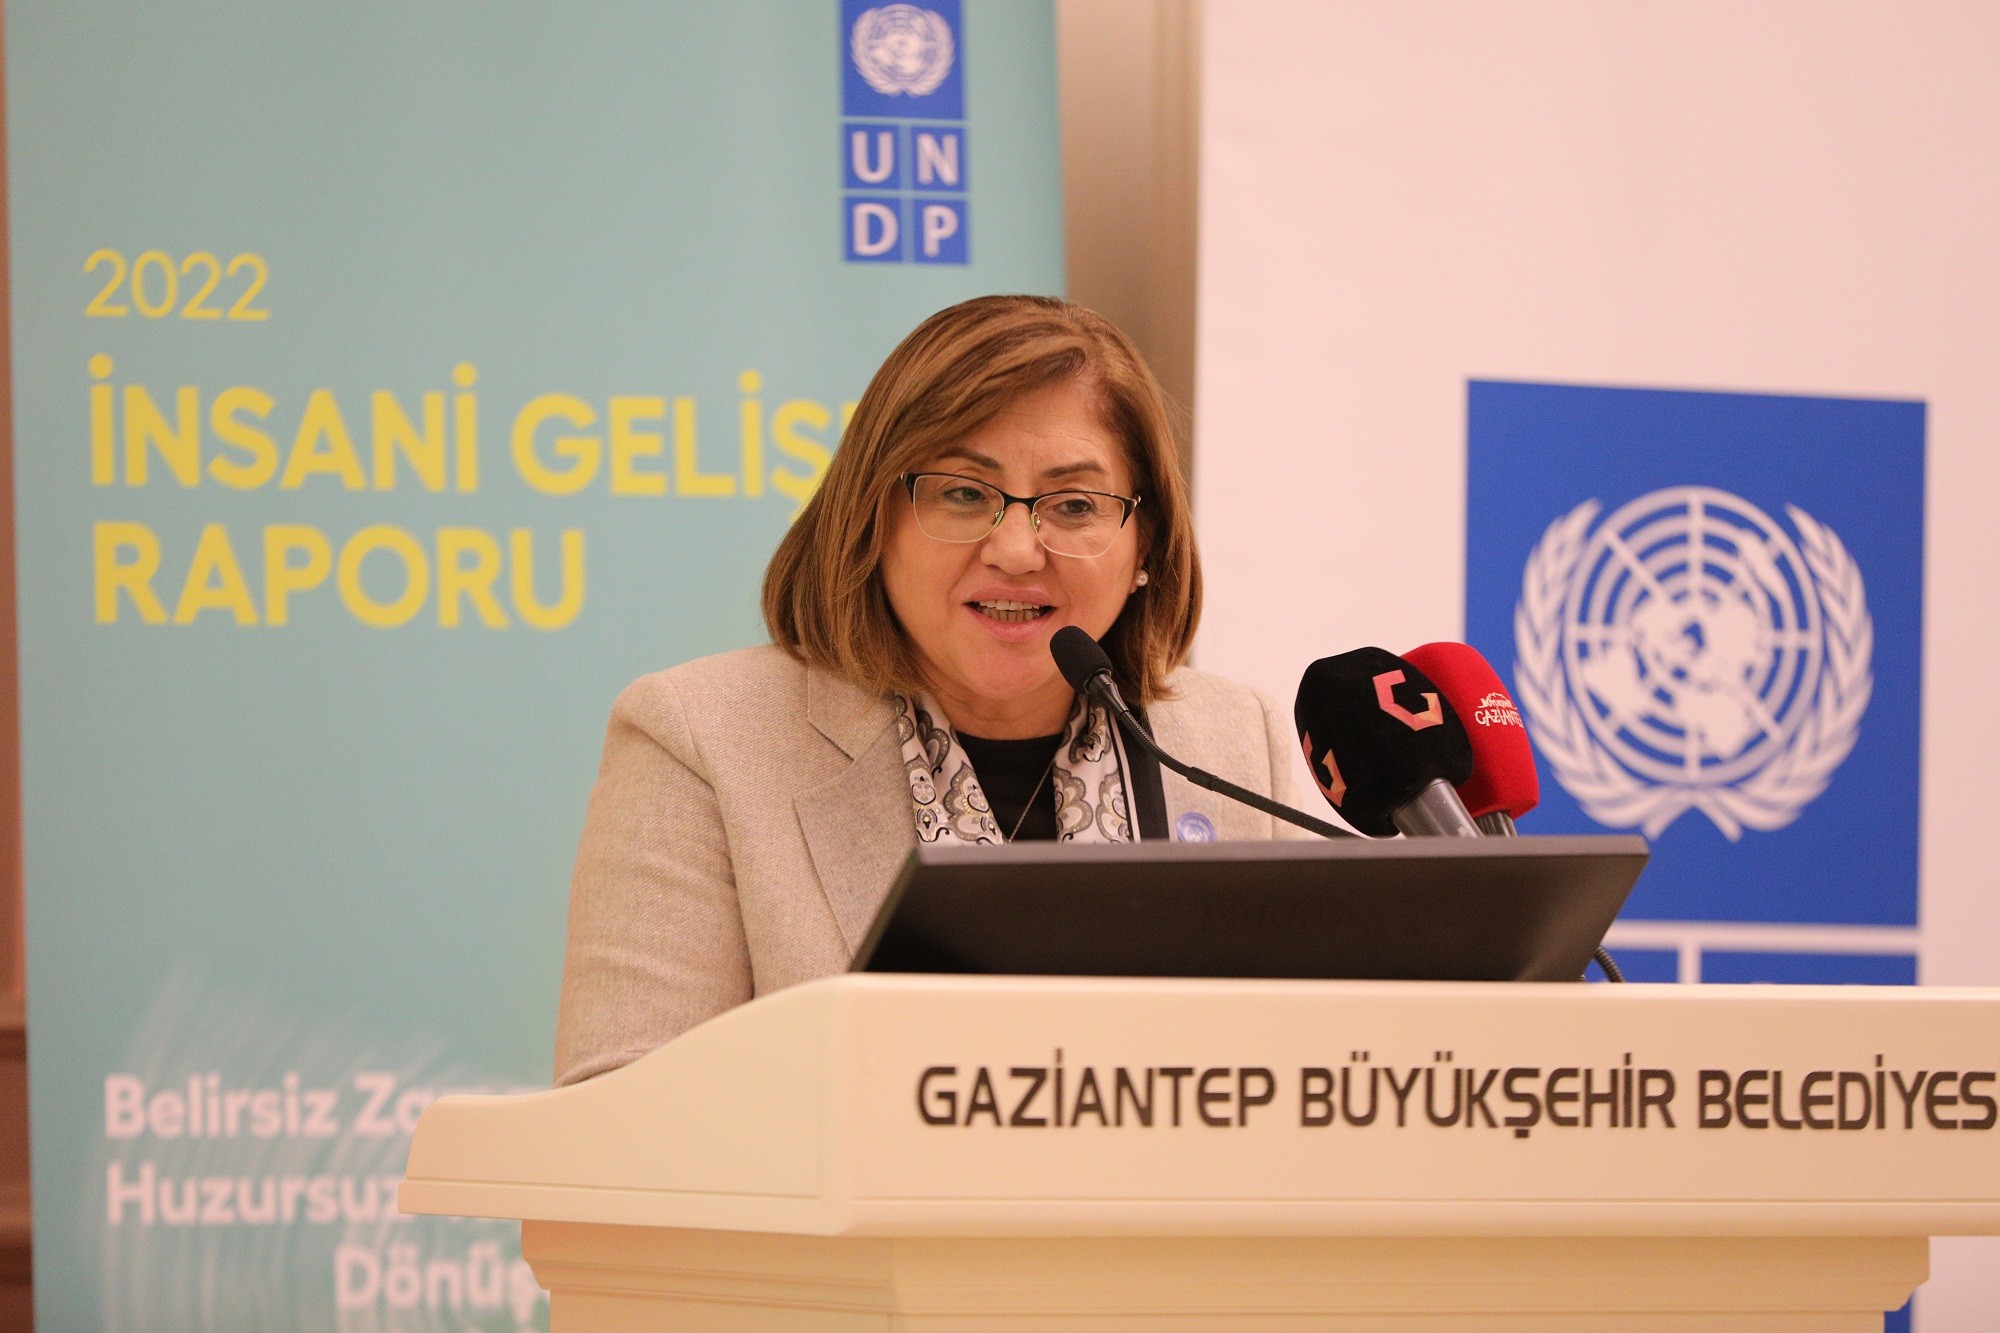 2022 İnsani Gelişme Raporu Gaziantep toplantısı yapıldı